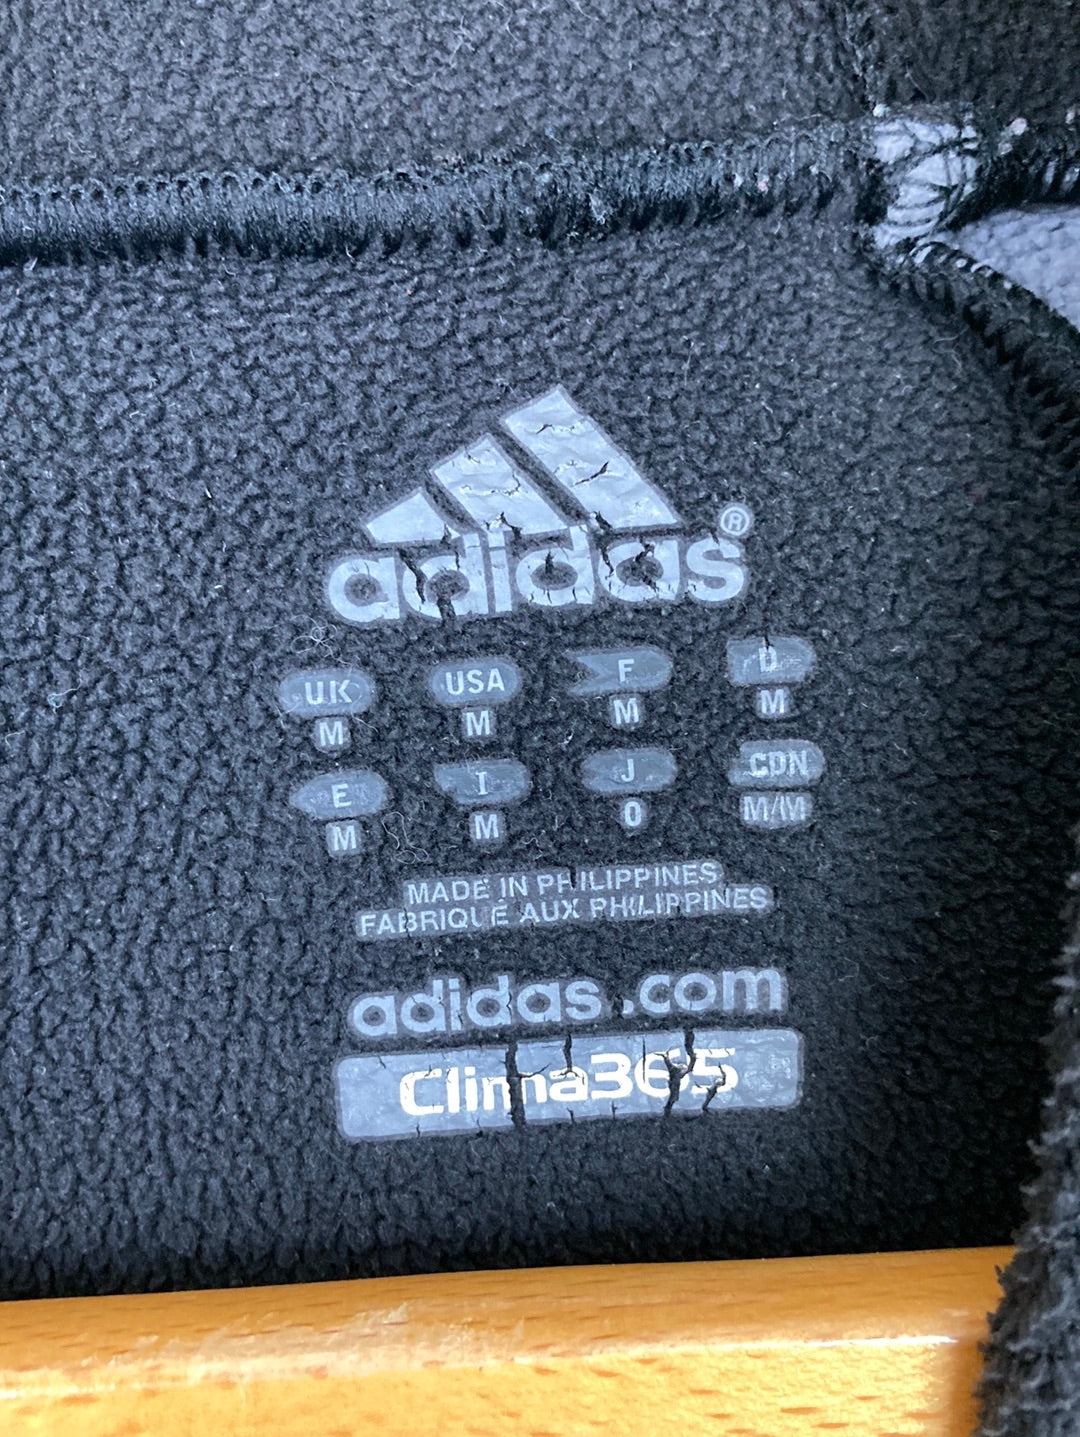 Adidas Trainingsjacke (L)